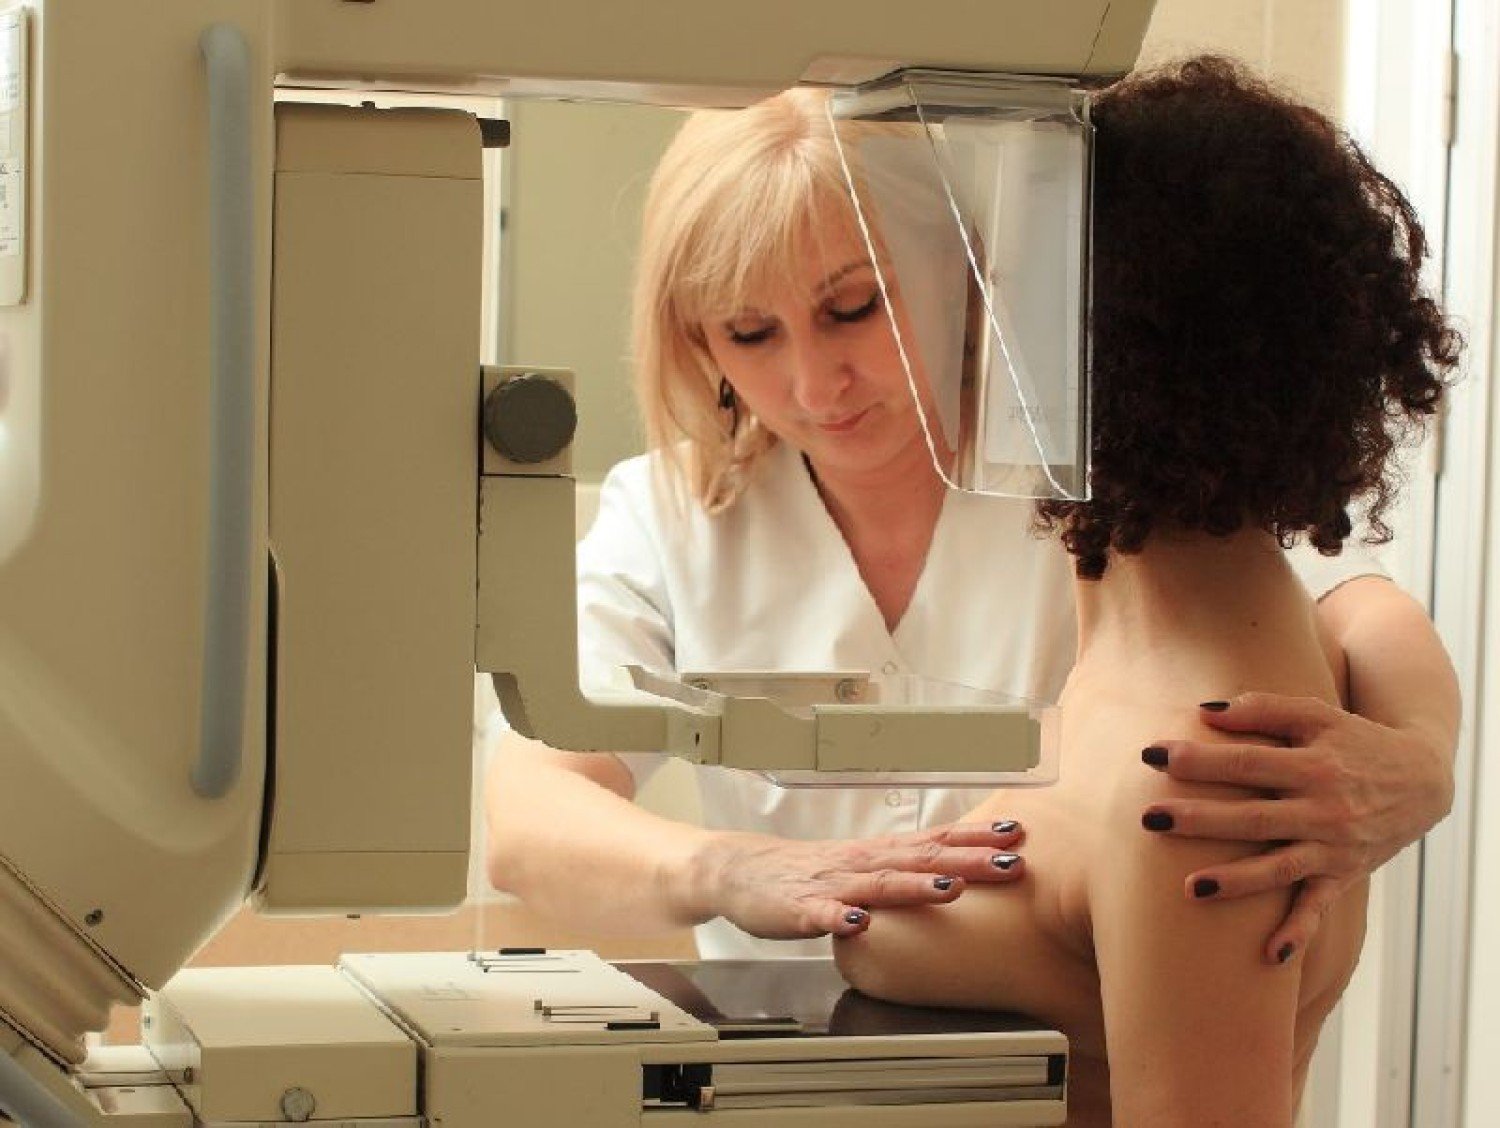 Смотреть онлайн Студентка из Саратова на приеме у гинеколога бесплатно